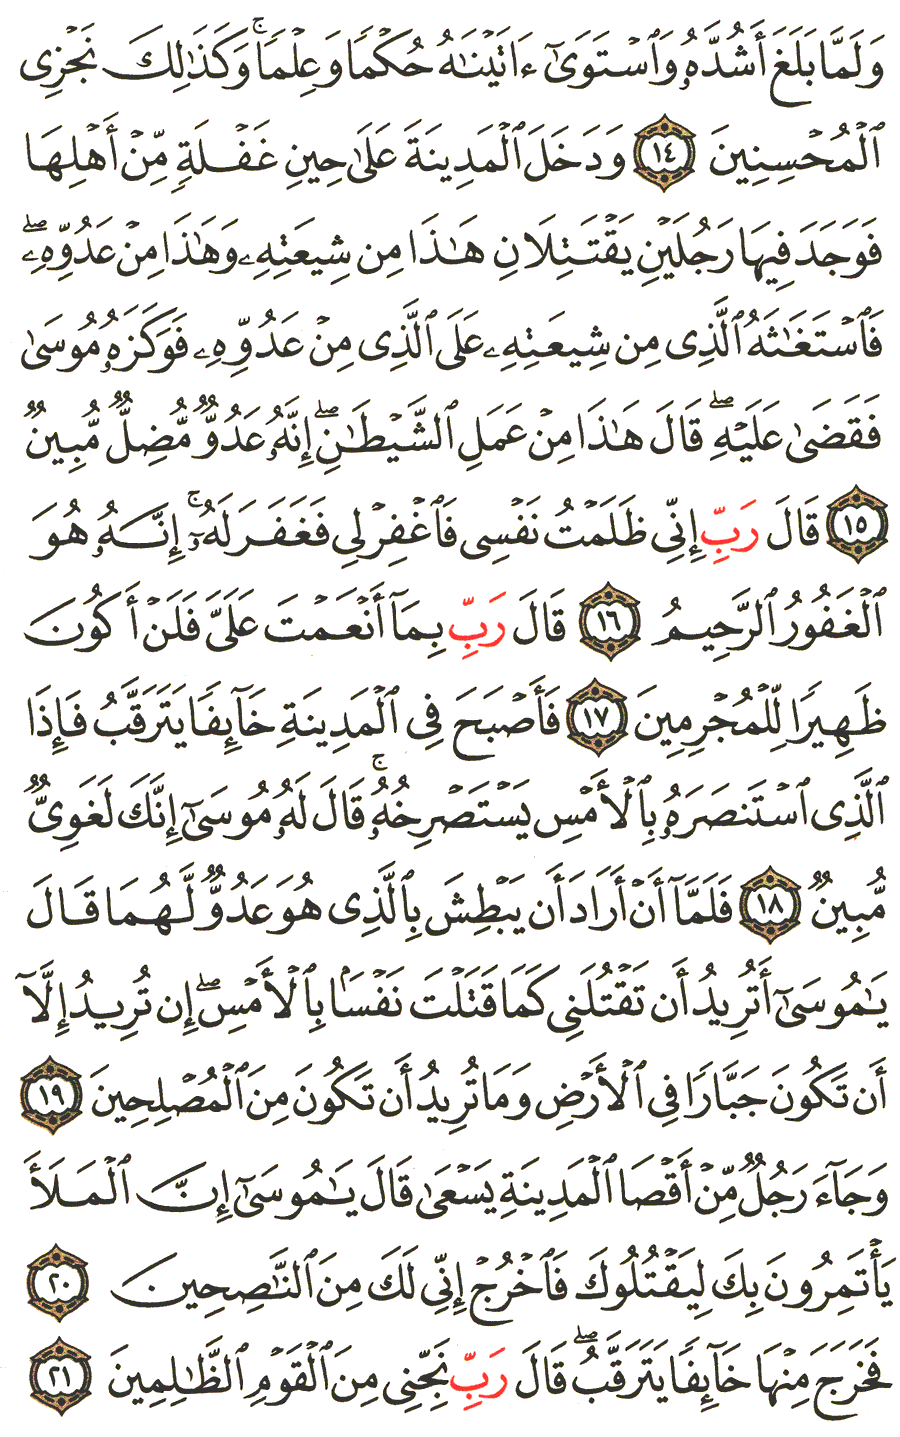 الصفحة رقم 387  من القرآن الكريم مكتوبة من المصحف